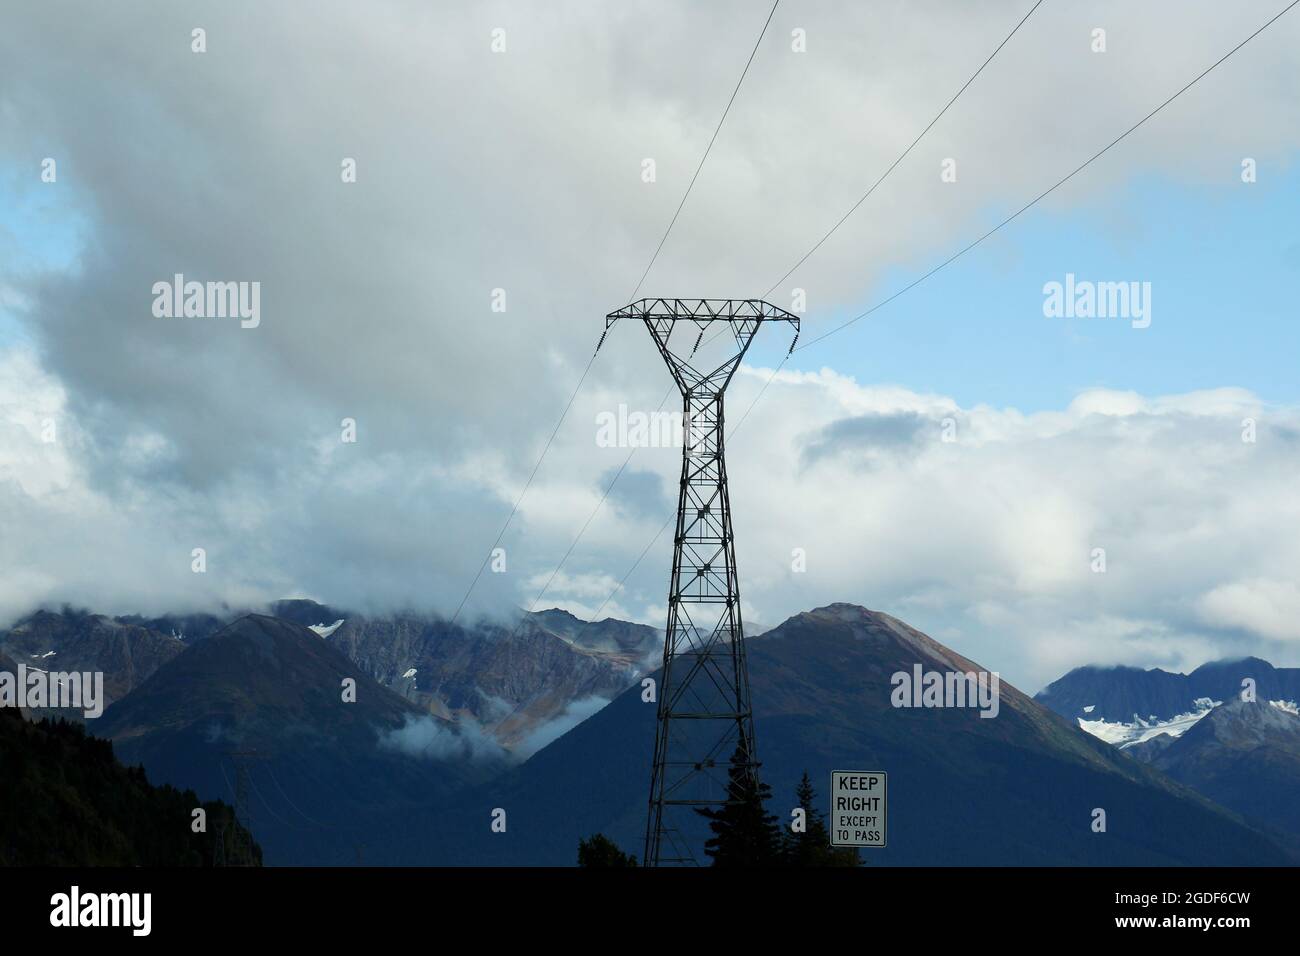 Ein großer Strommast mit Stromleitungen und einem Hinweisschild 'Keep right expect pass' in einer Berglandschaft an einem bewölkten Tag in Alaska, USA. Stock Photo